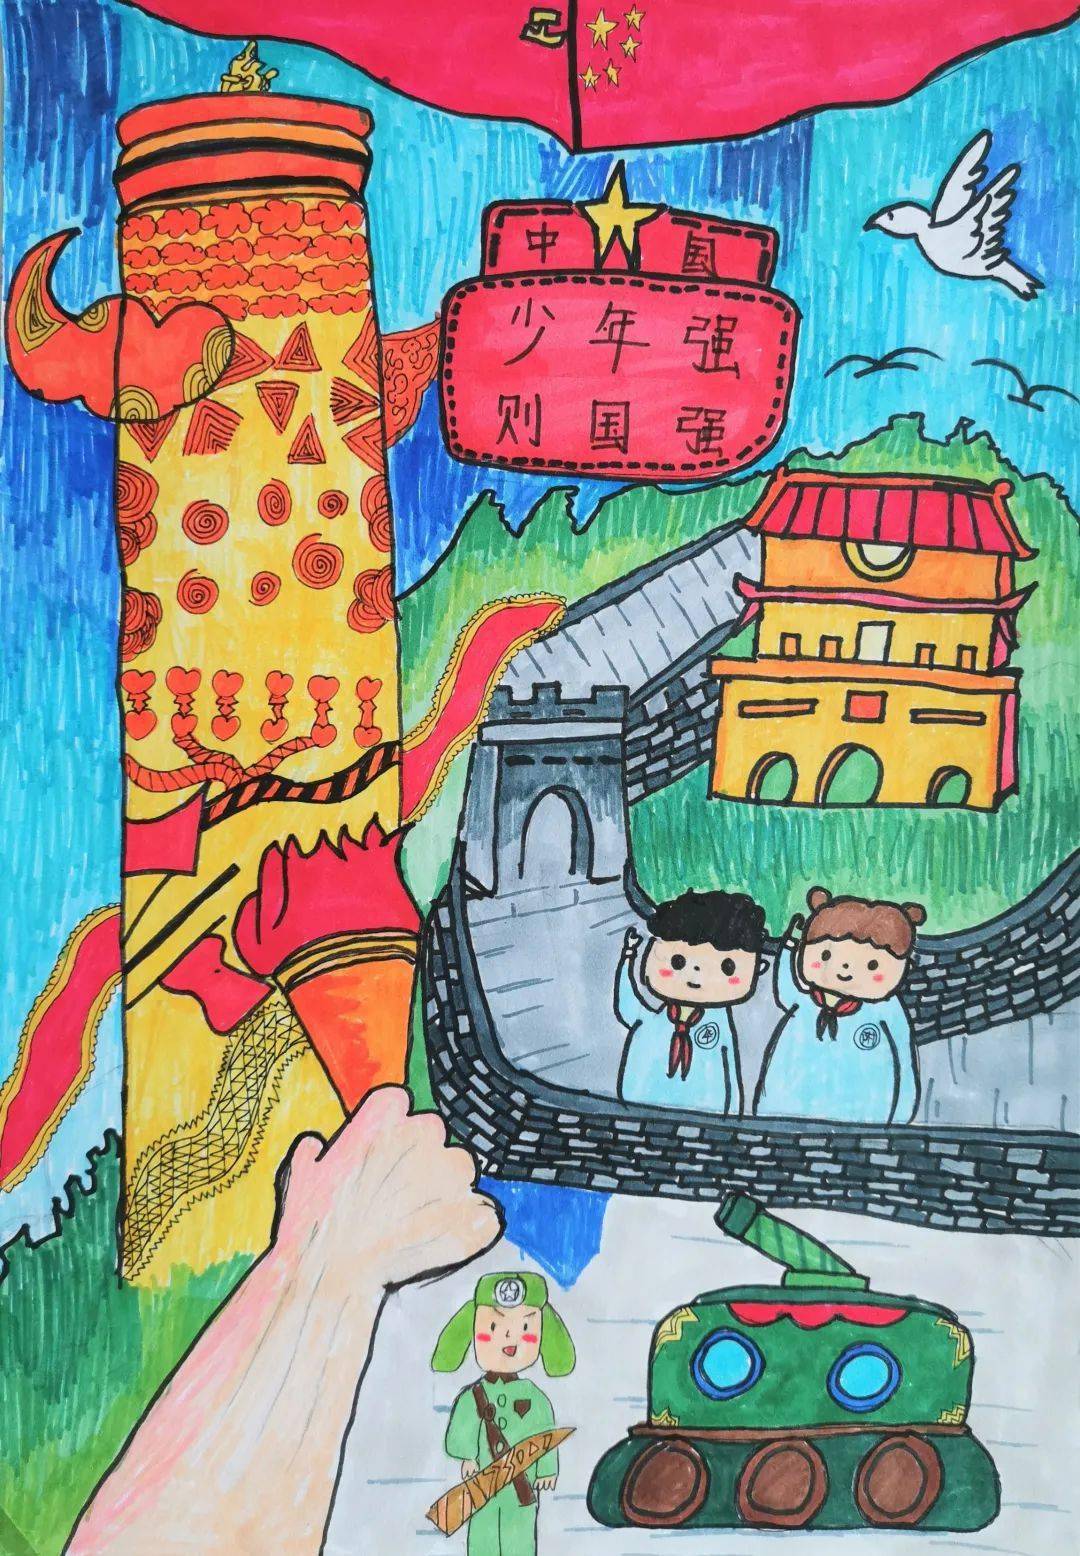 传红色基因做强国少年第二届艺术节主题儿童画大赛